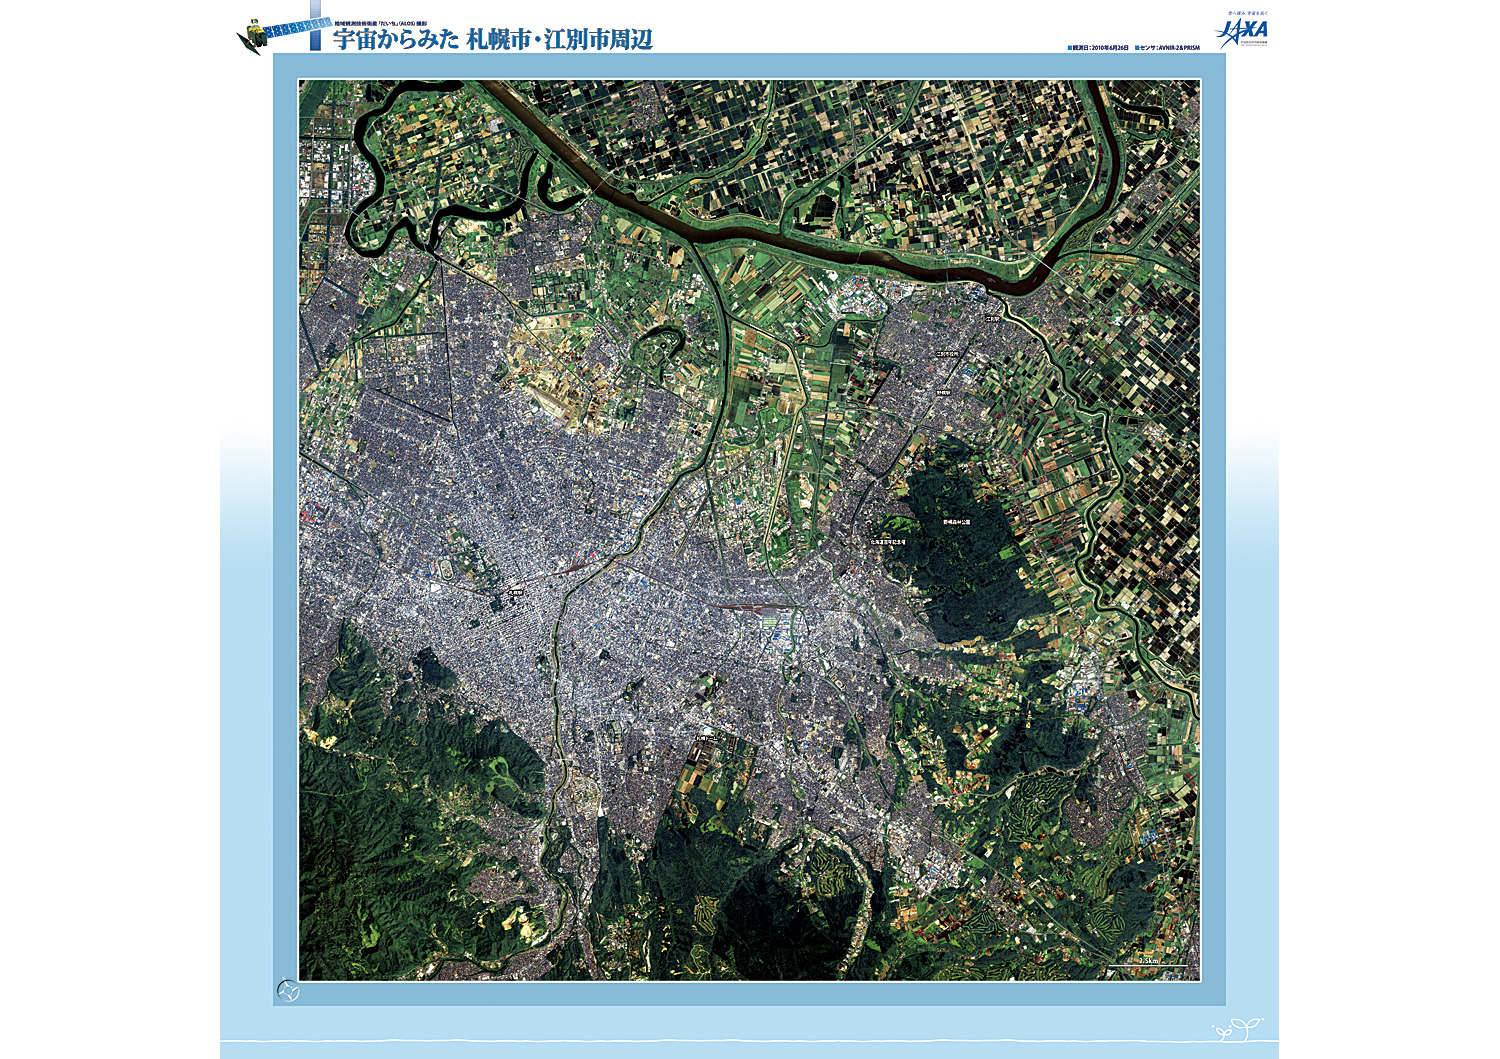 だいちから見た日本の都市 札幌市、江別市周辺 :衛星画像（ポスター仕上げ）